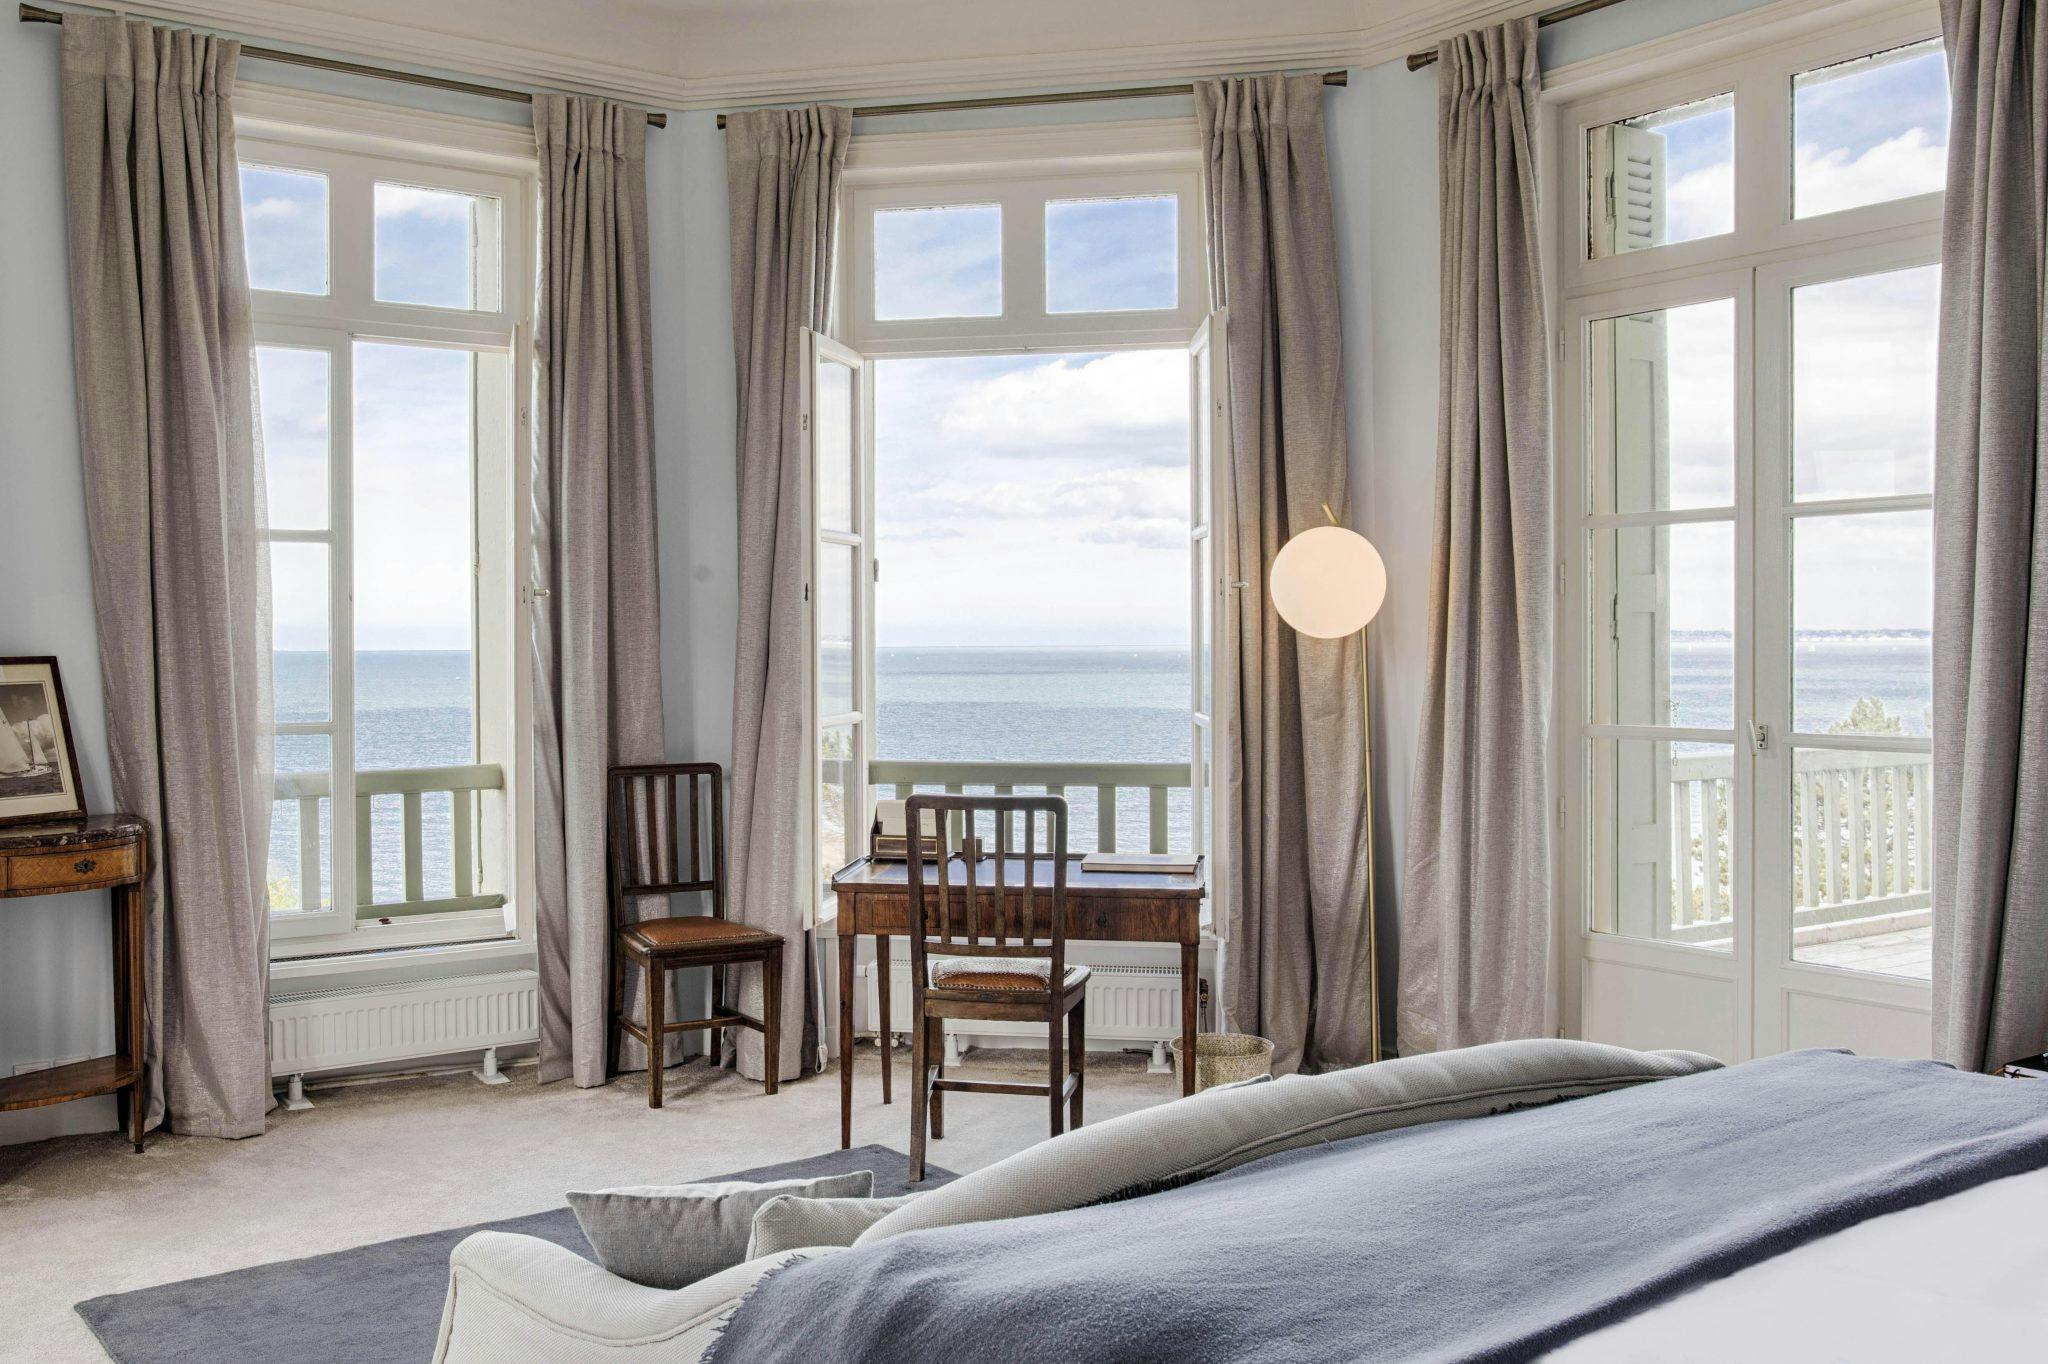 Window overlooking the sea in one of the corner bedrooms